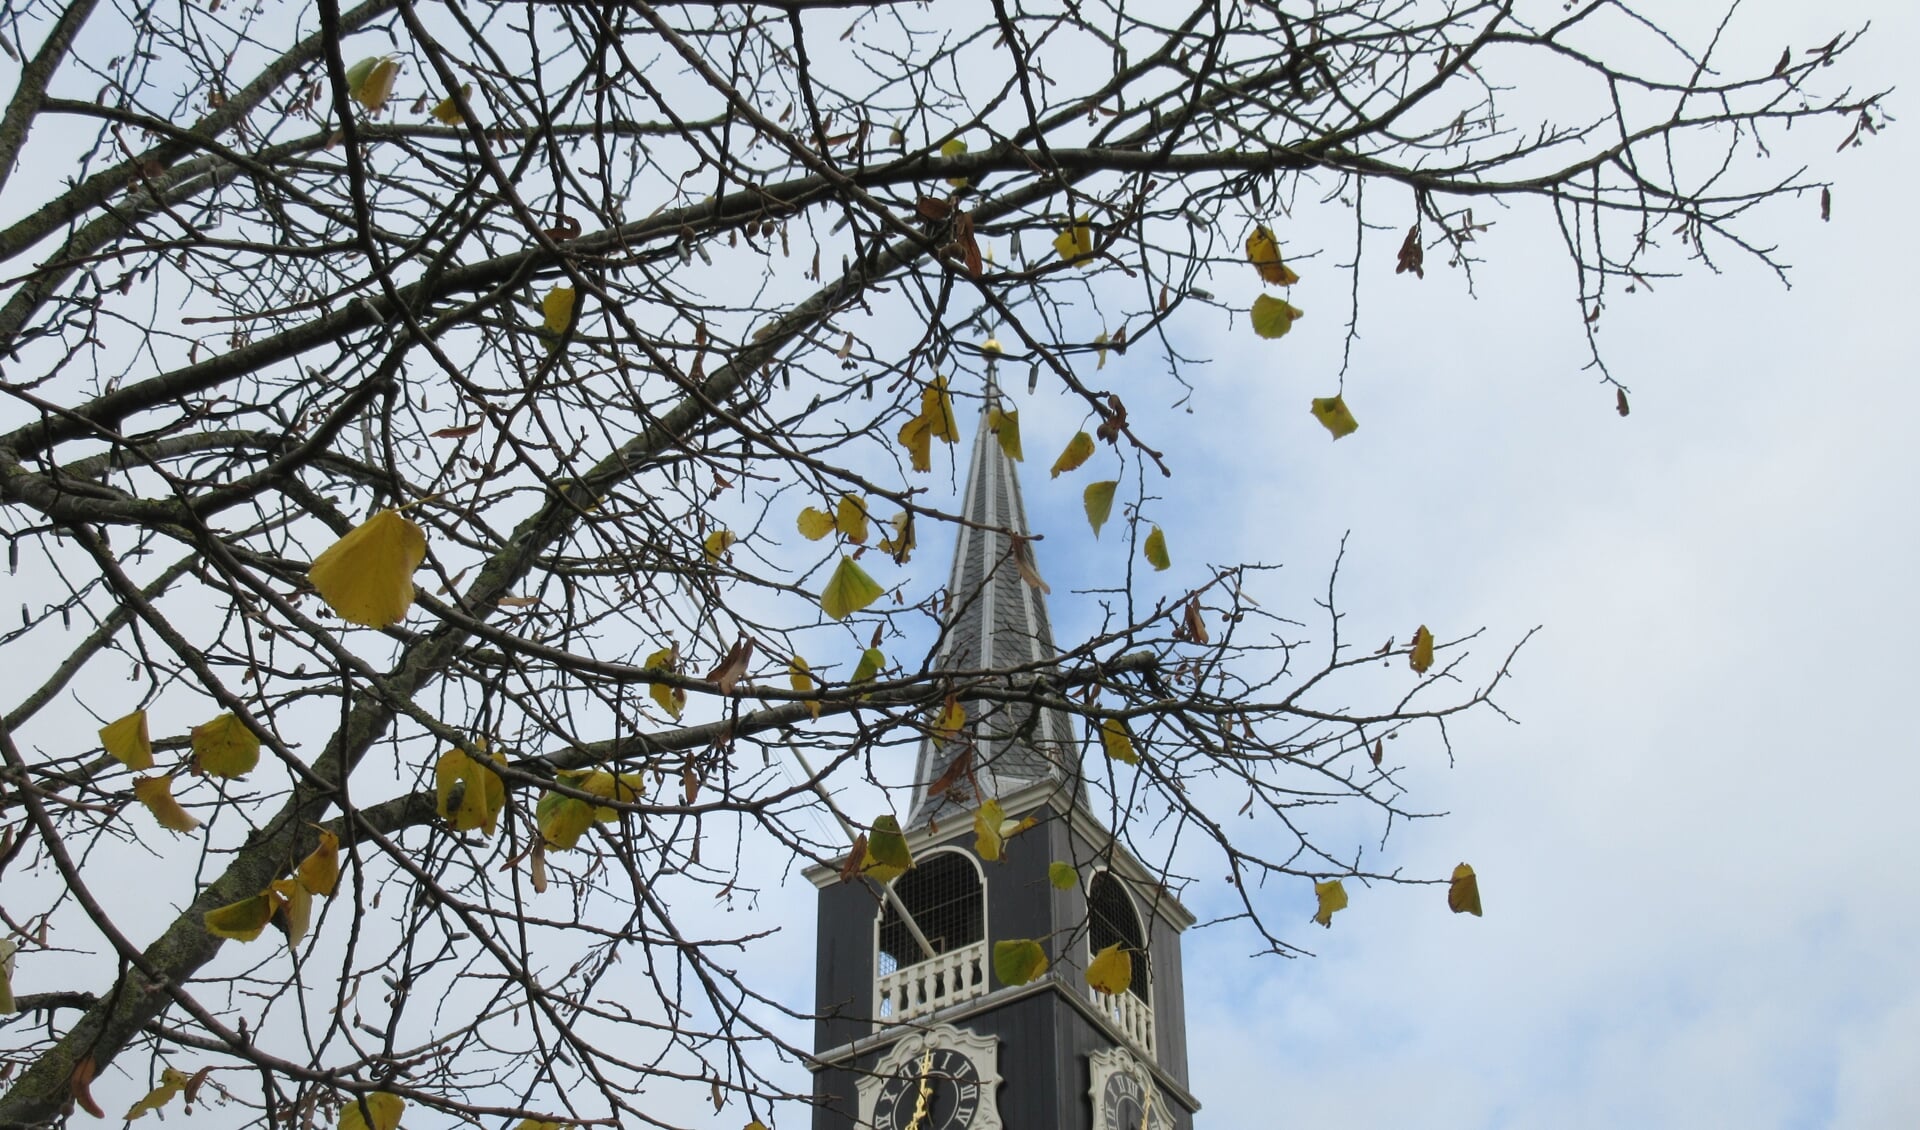 Wie kan zich Oostzaan voorstellen zonder de kerk met de ranke toren die boven Oostzaan uitsteekt?